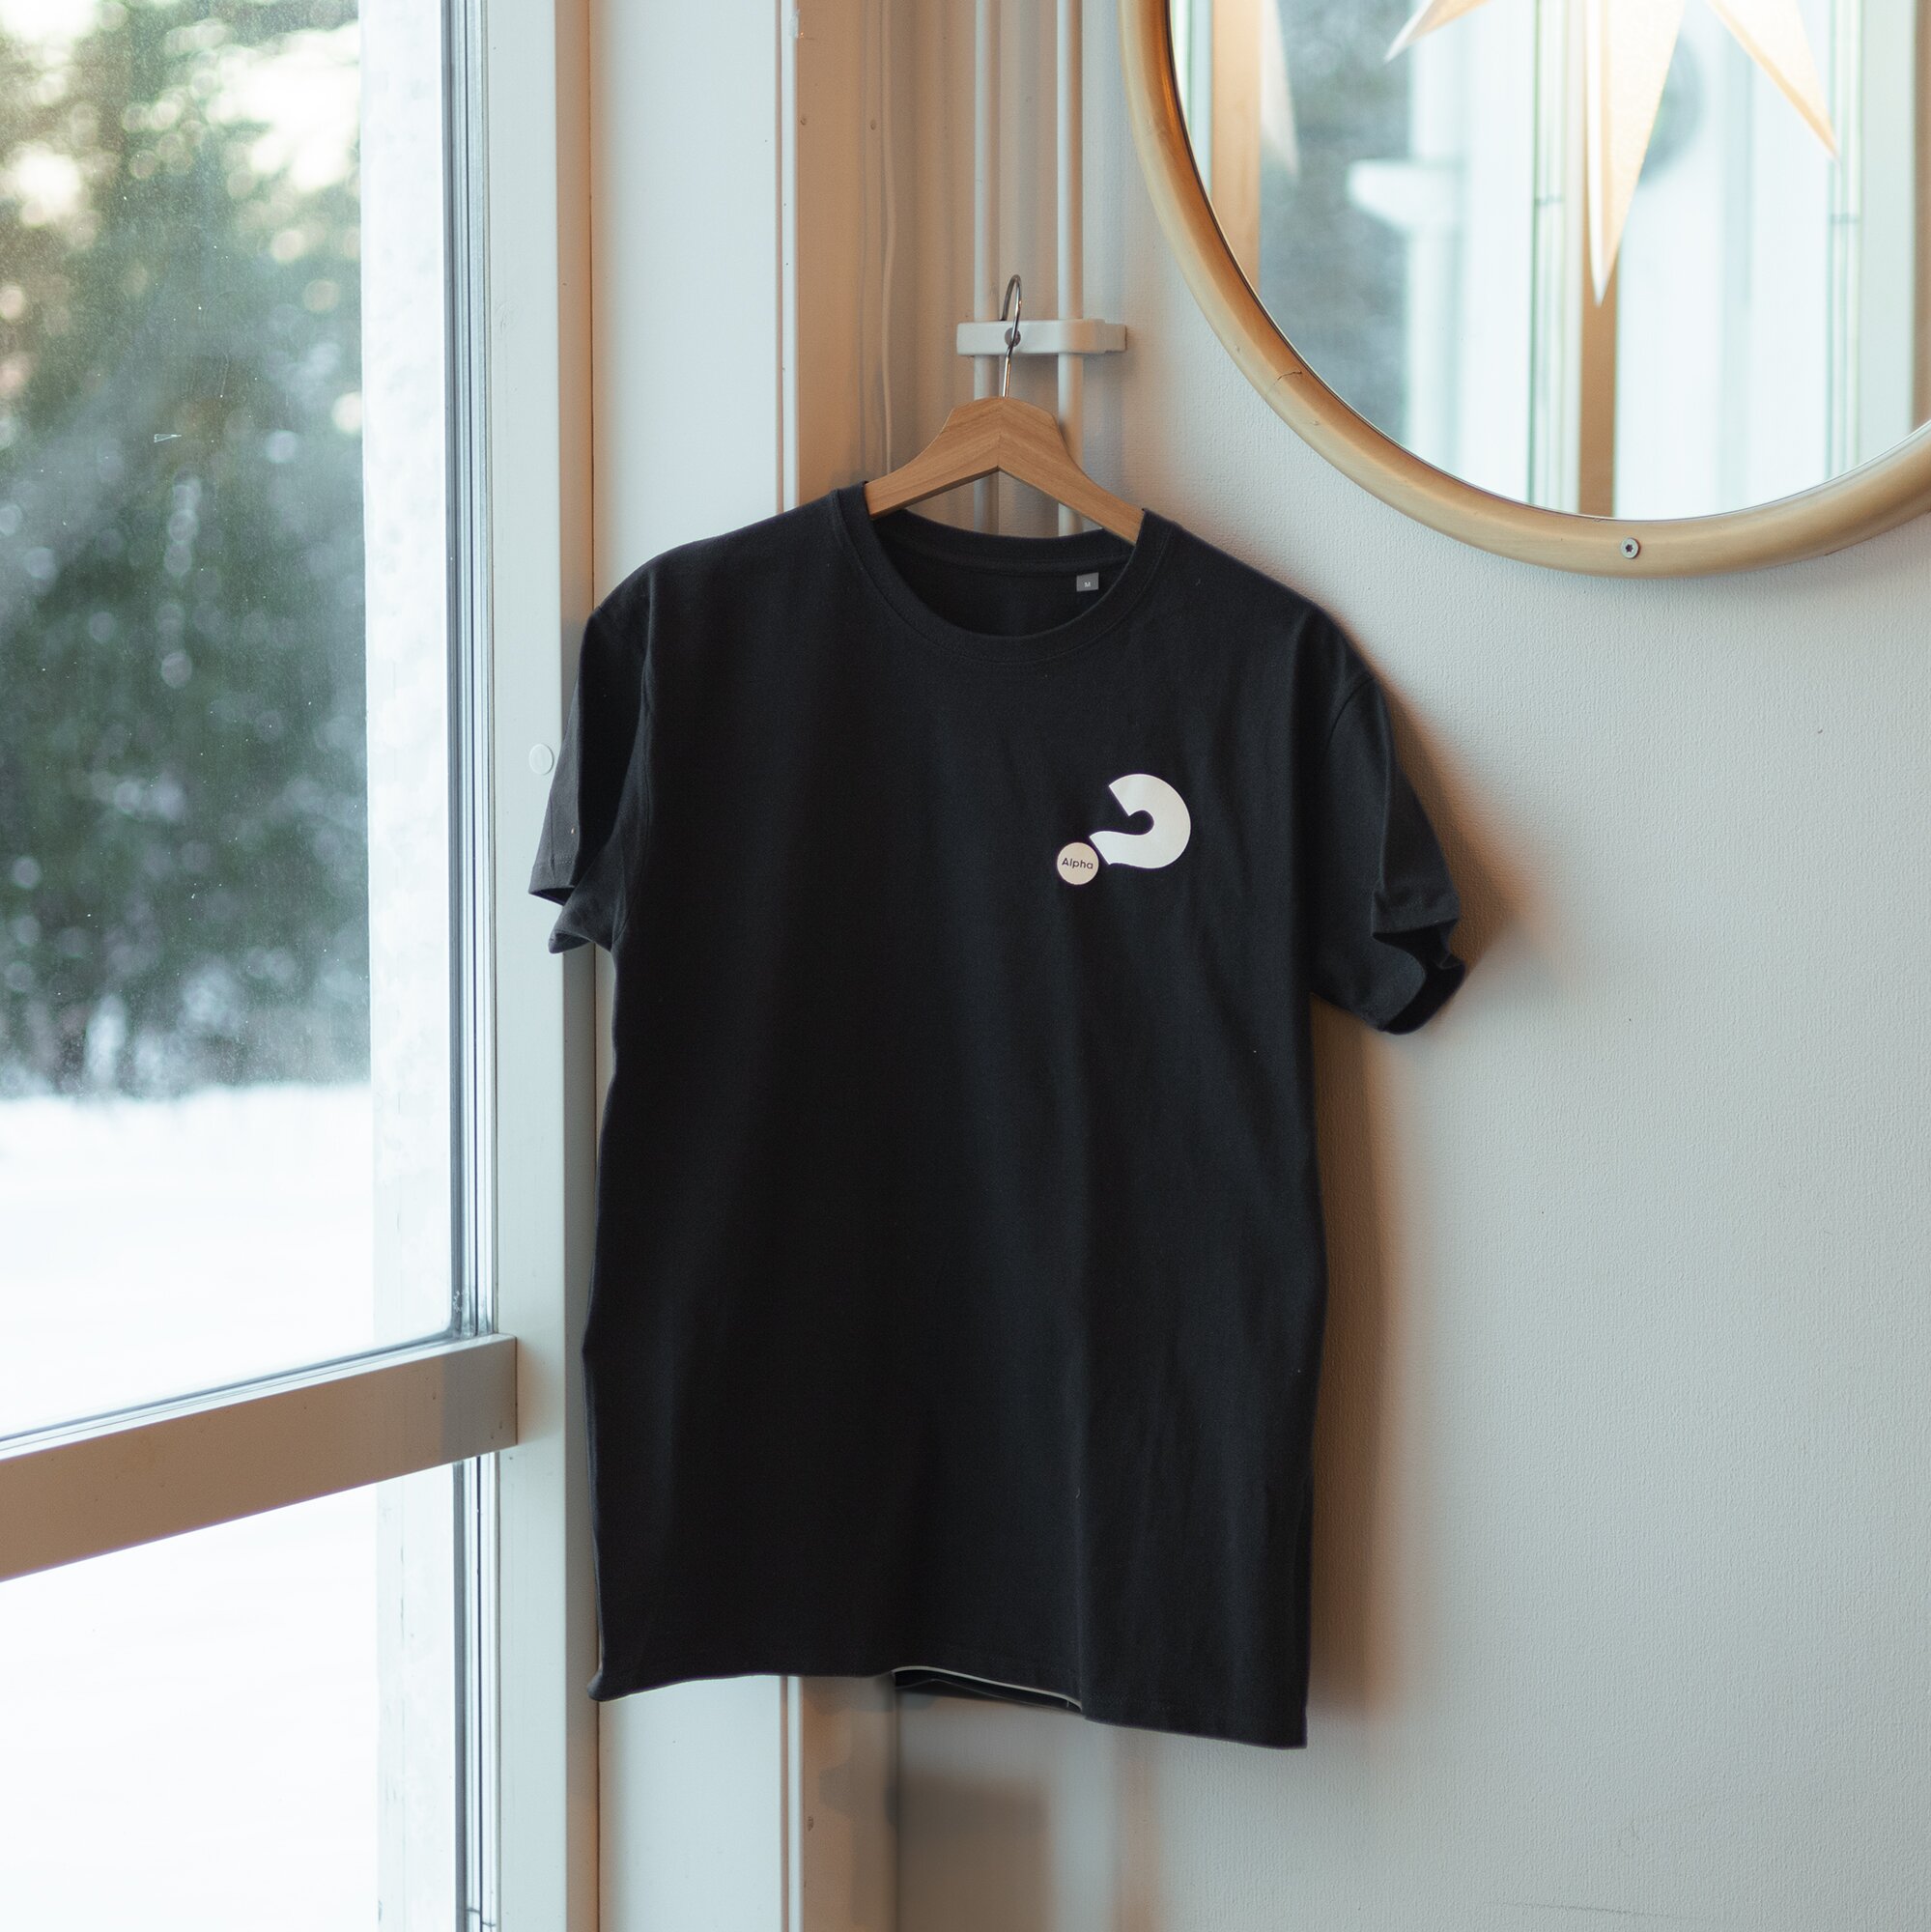 T-shirt -Unisex, svart, alpha för alla